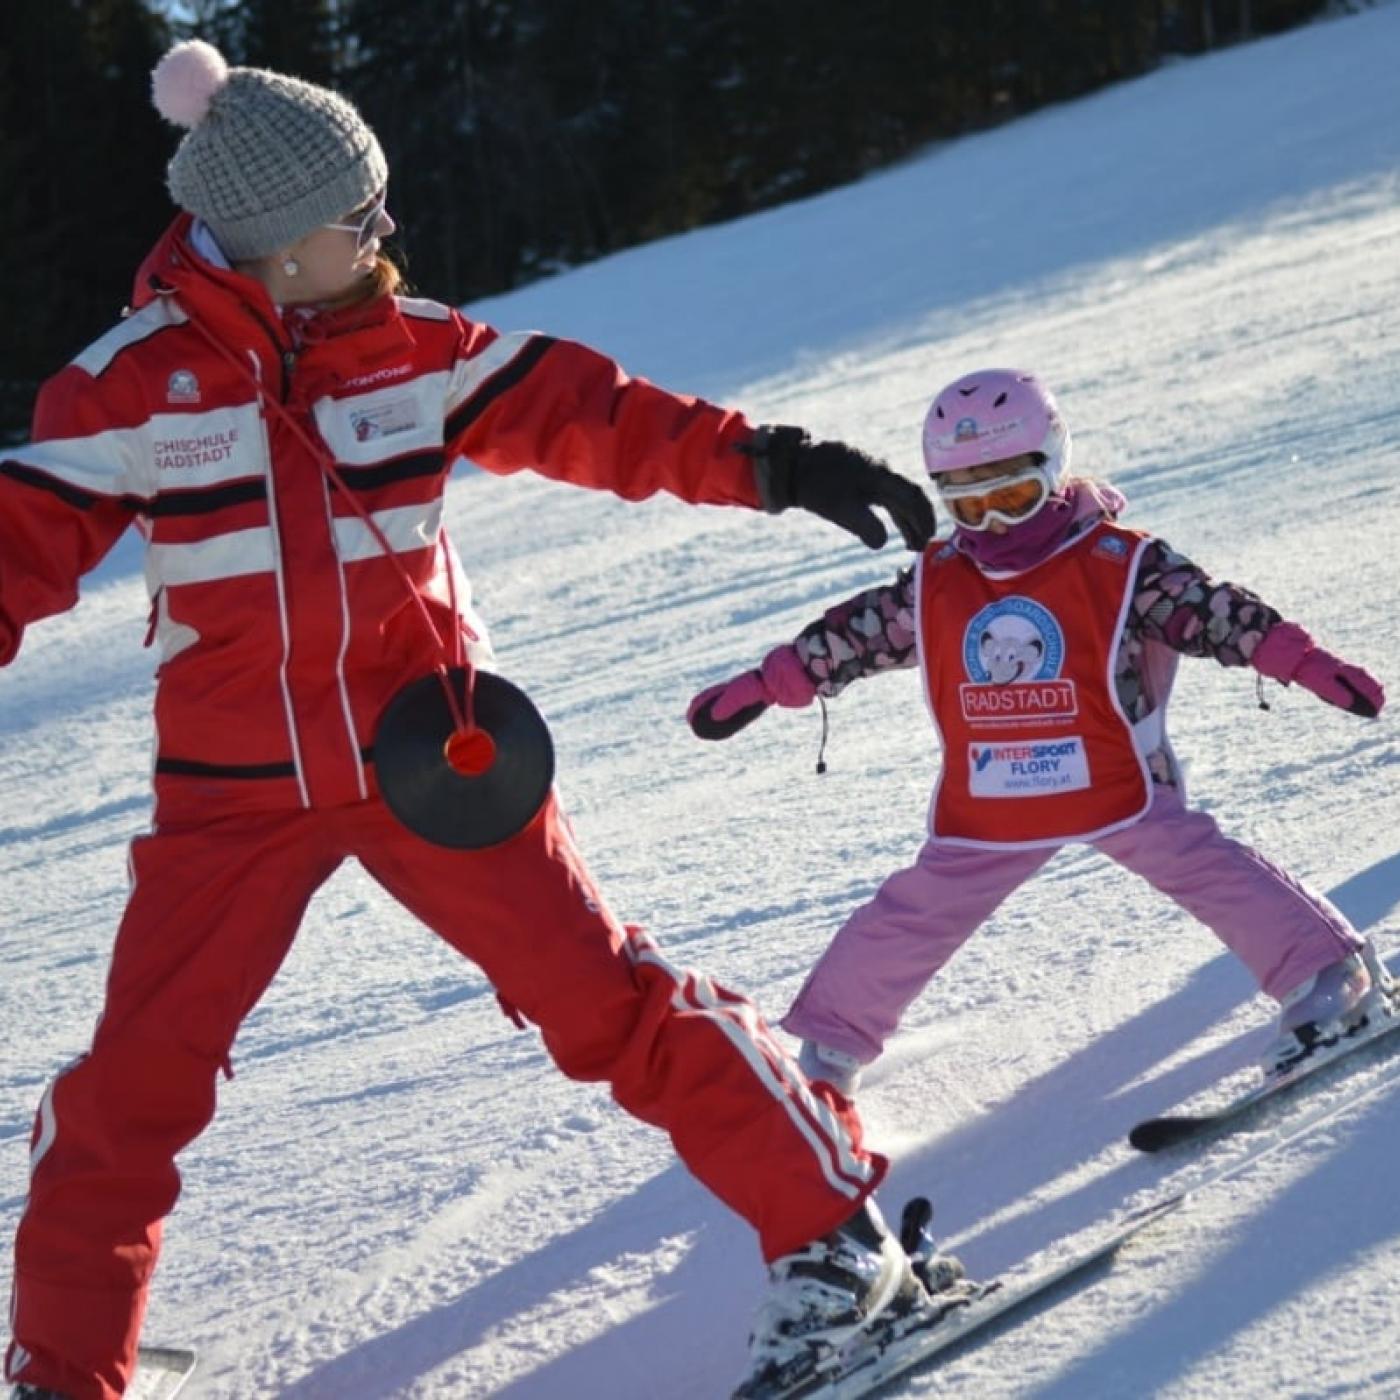 Kinderskikurs in der Schi- und Snowboardschule Radstadt.